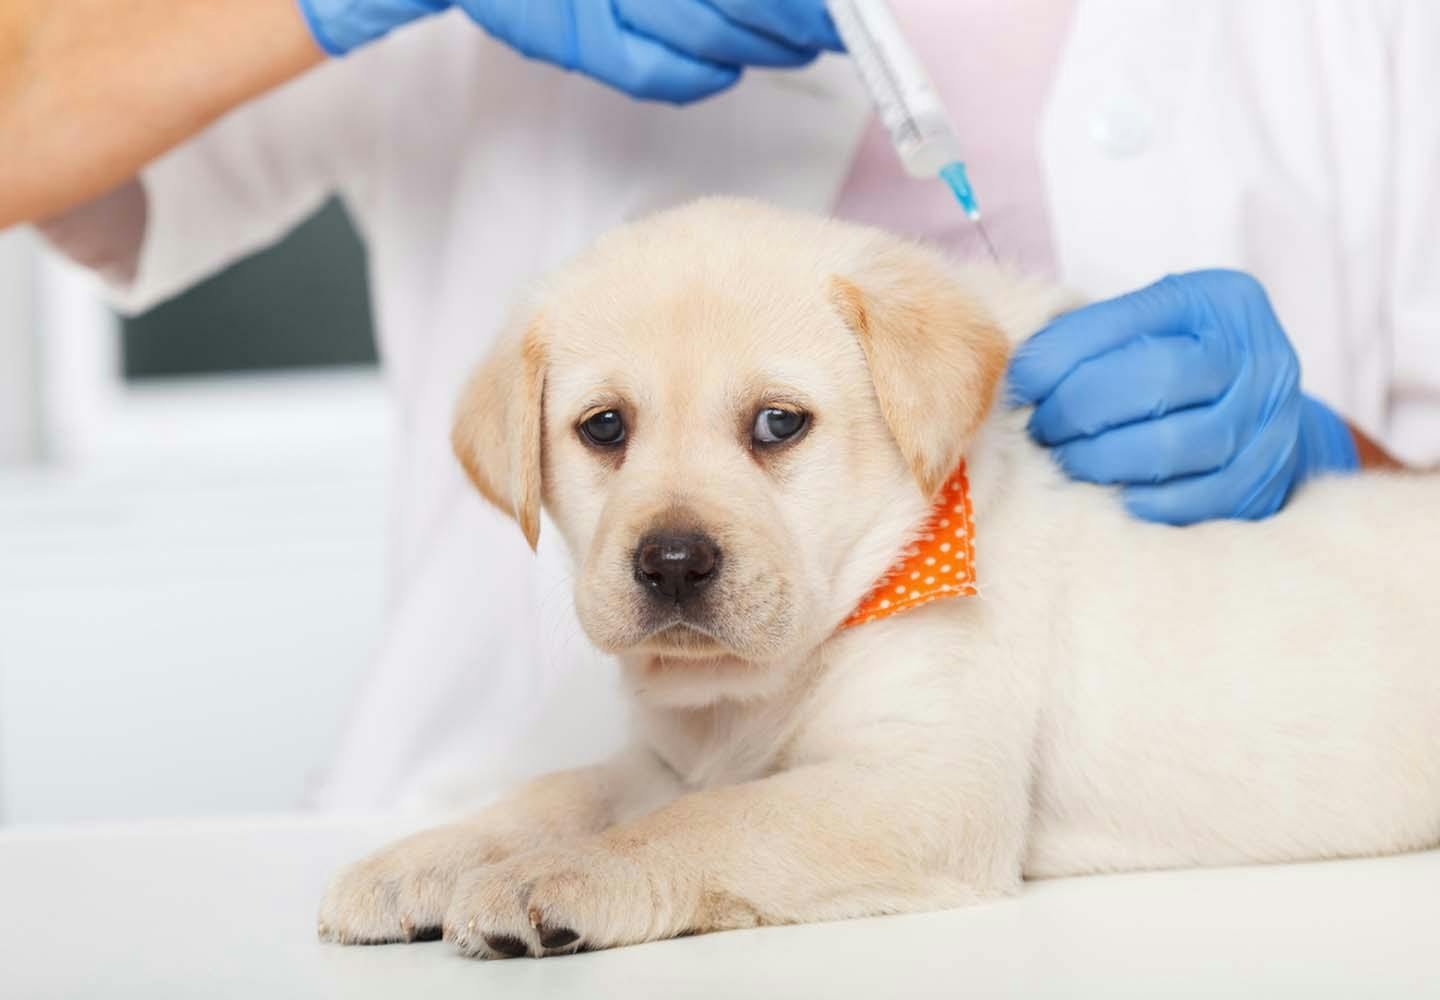 70以上 犬 ワクチン 副作用 下痢 160754犬 狂犬病 ワクチン 副作用 下痢